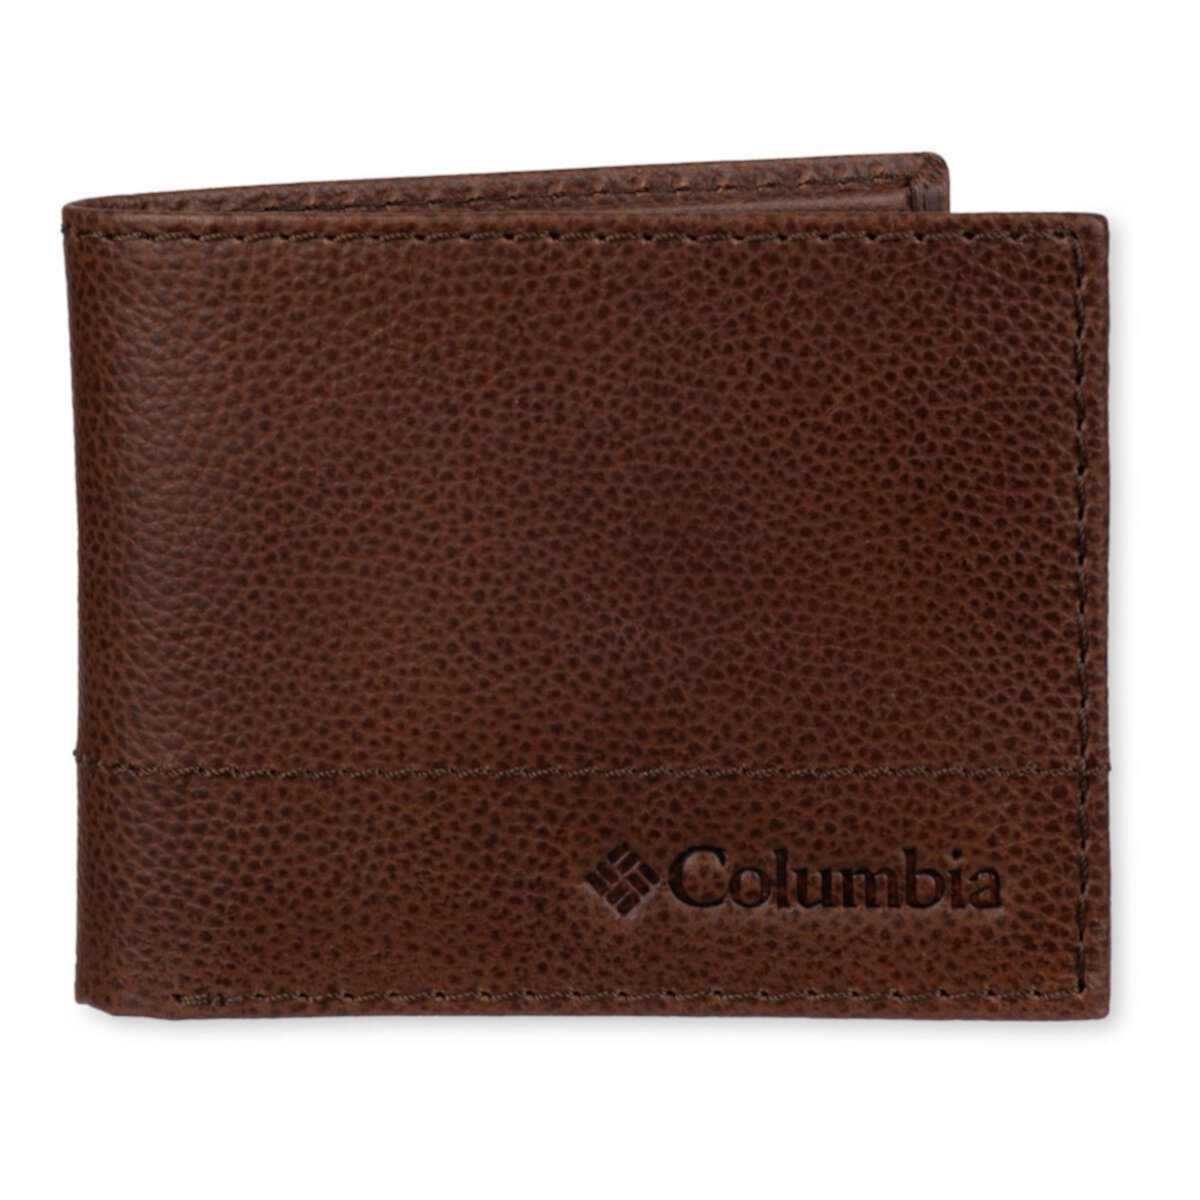 Мужской кожаный дорожный кошелек двойного сложения Columbia с RFID-блокировкой Columbia